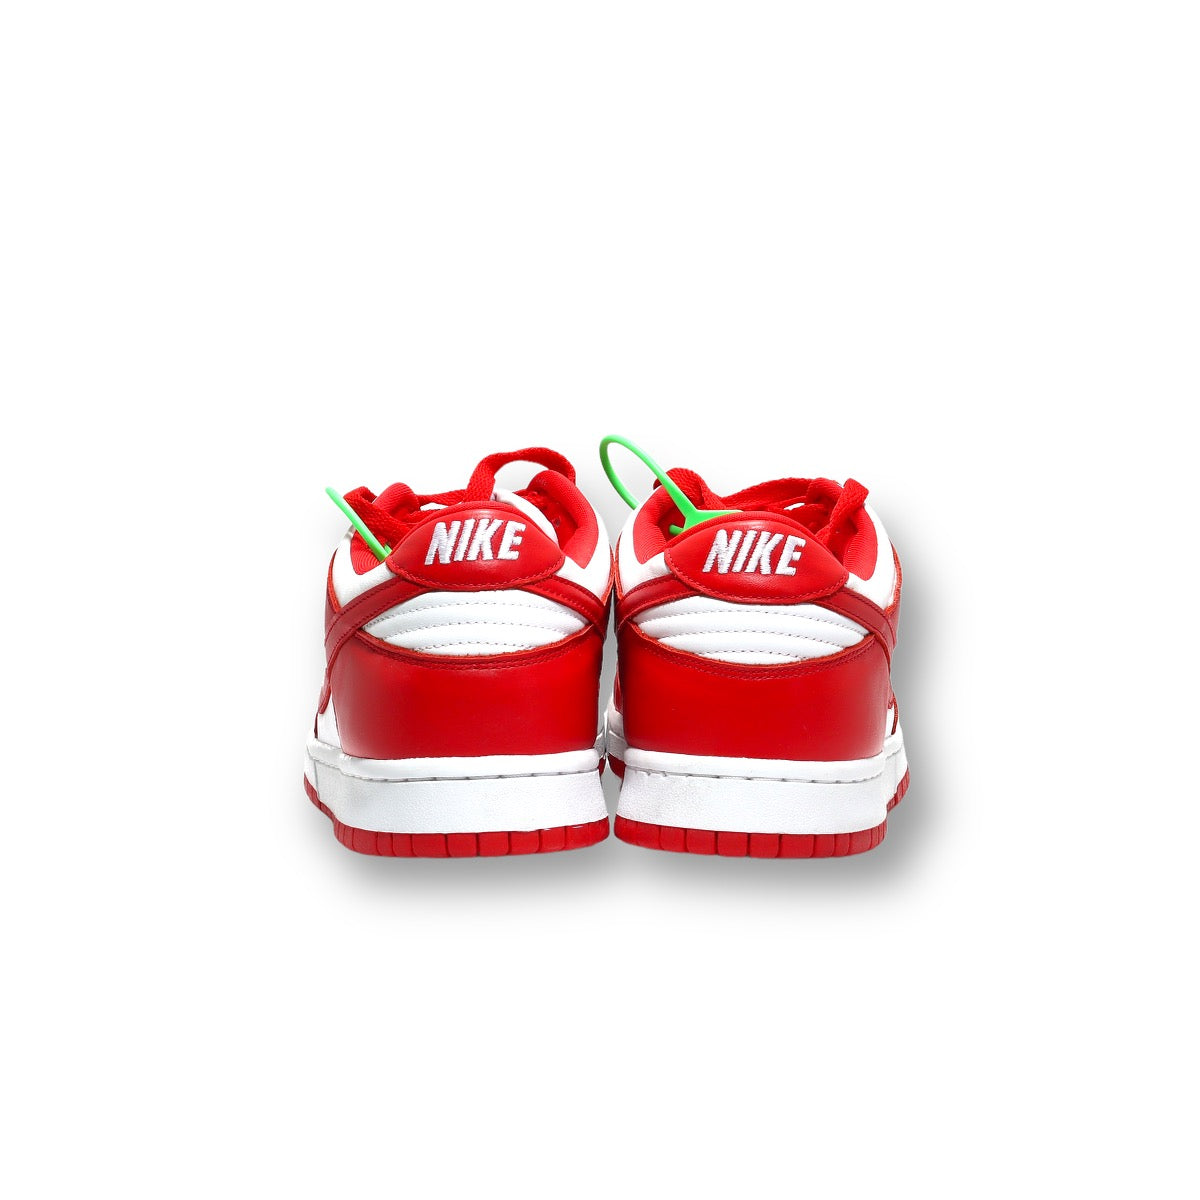 Nike Dunk SB University Red Low